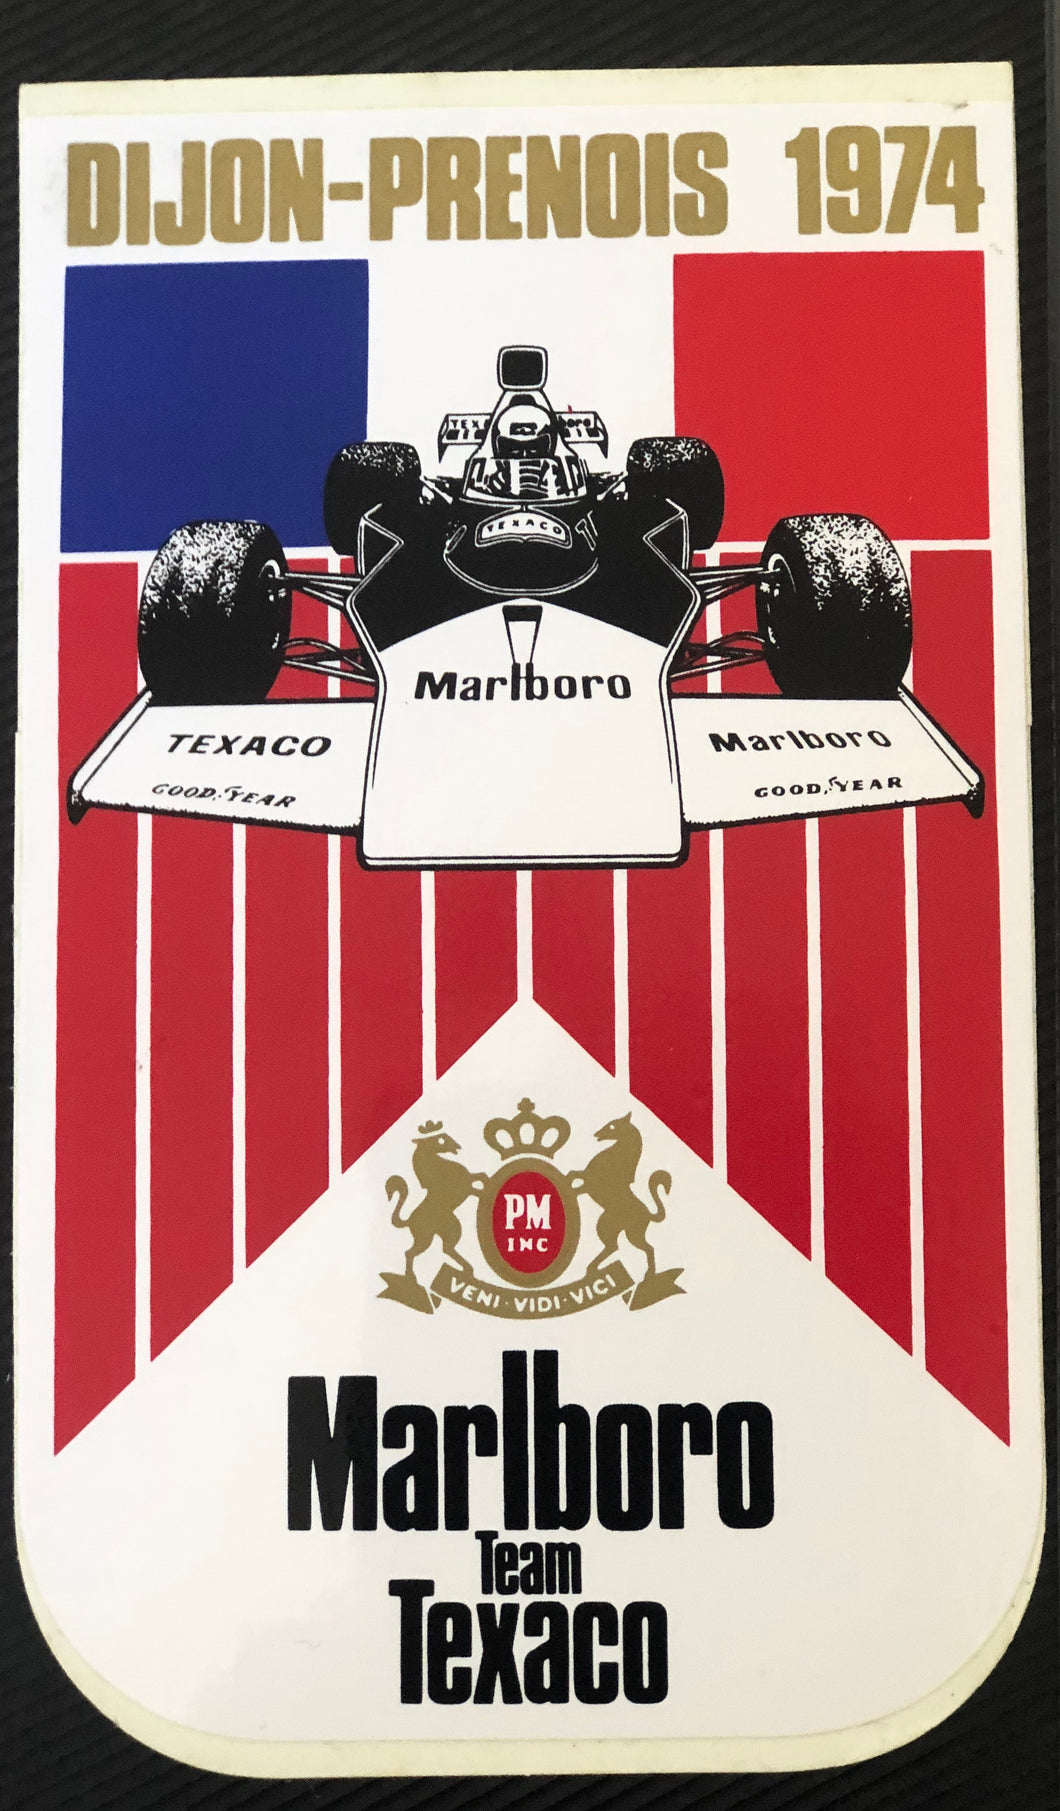 Marlboro team Texaco - French 1974